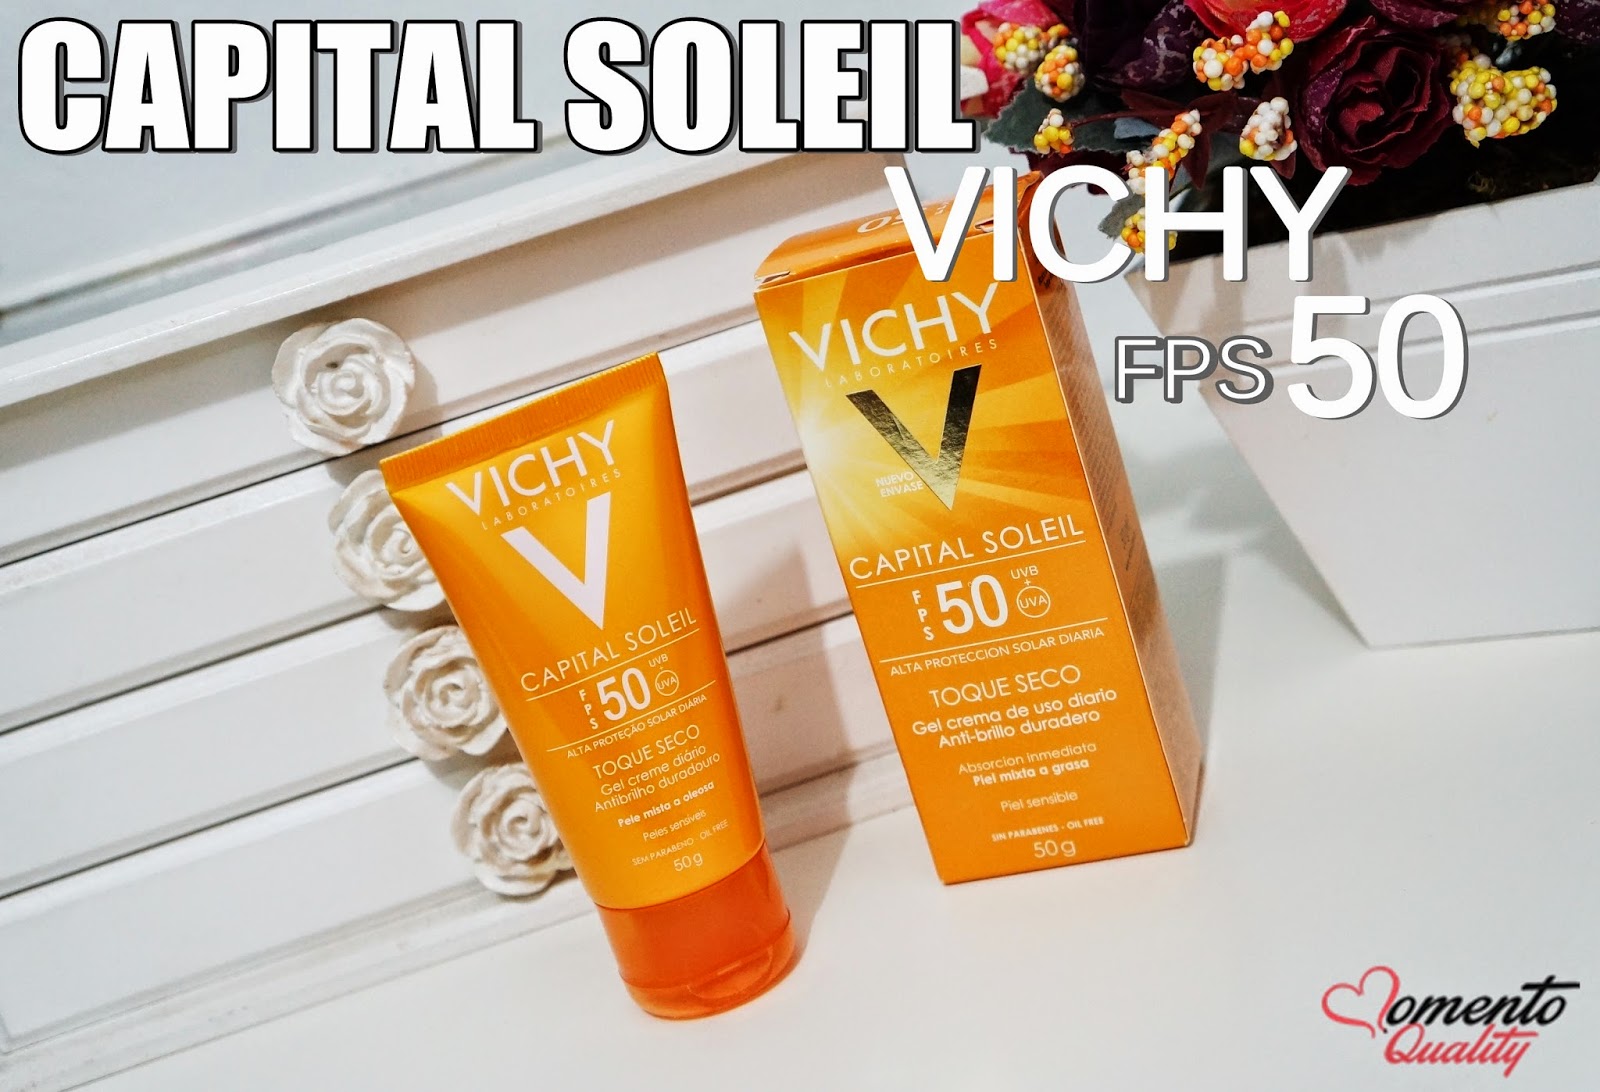 Capital Soleil Toque Seco FPS 50 Vichy 